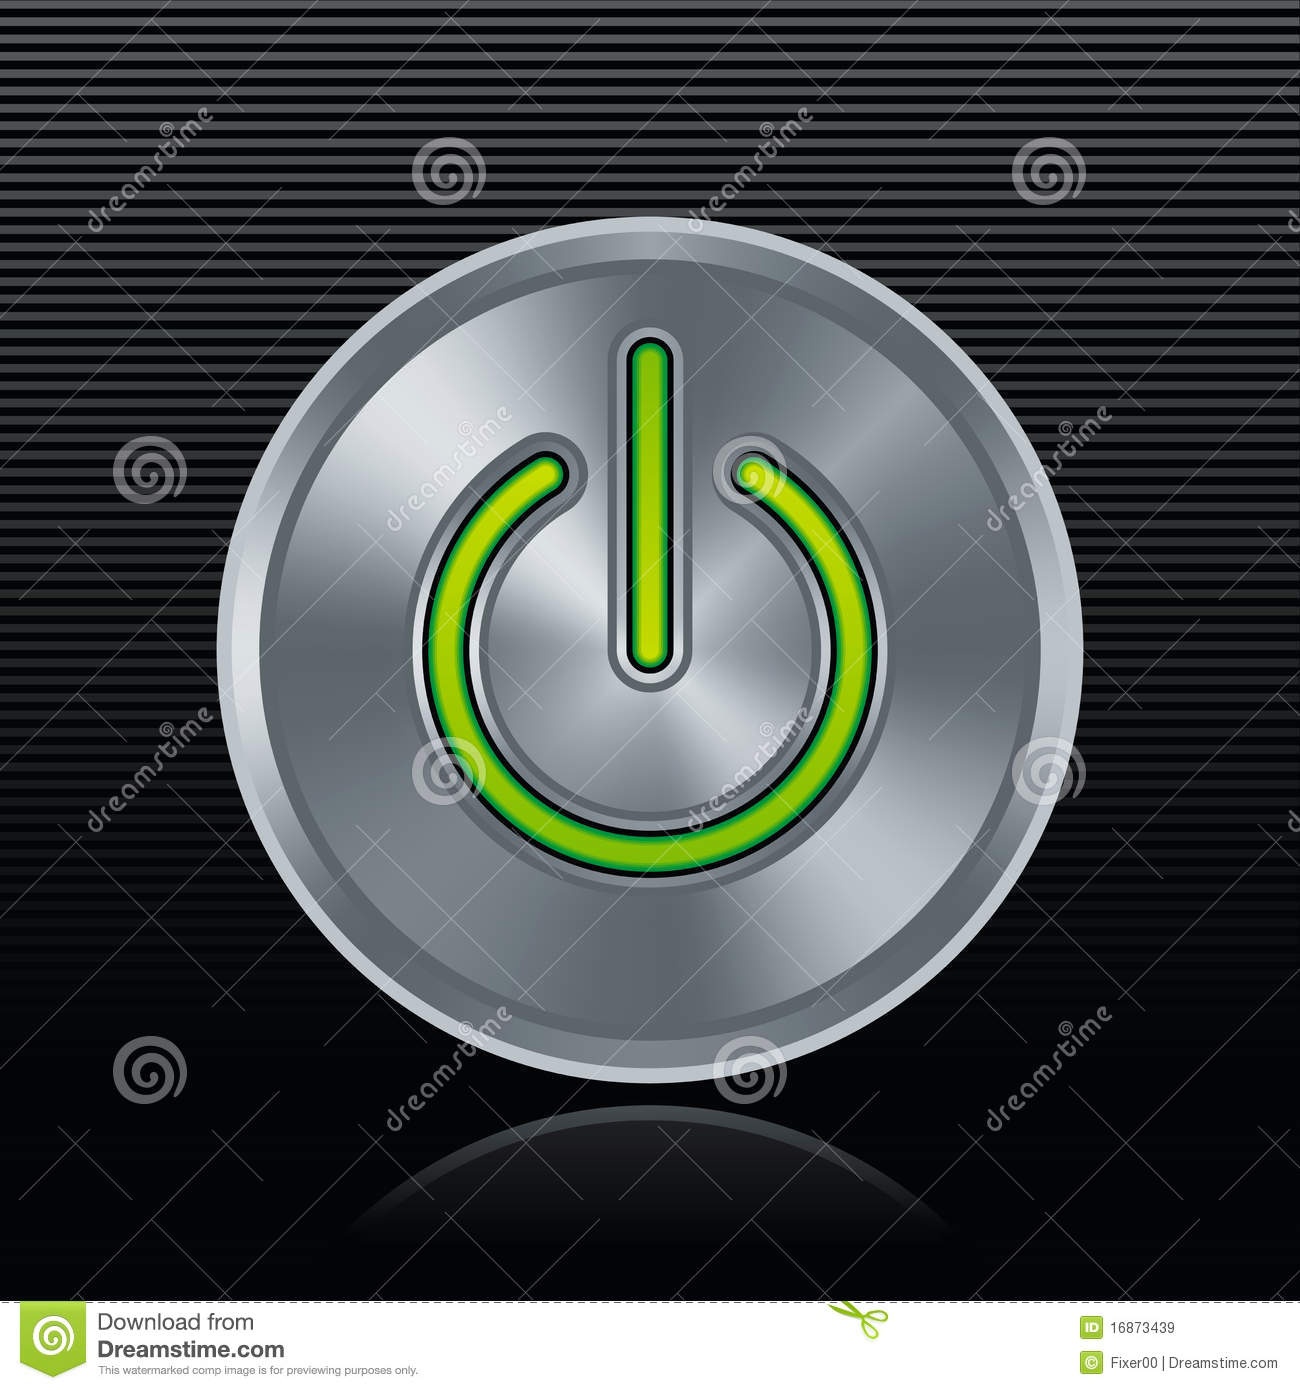 Round Metal Start Button With Green Light On Dark Background